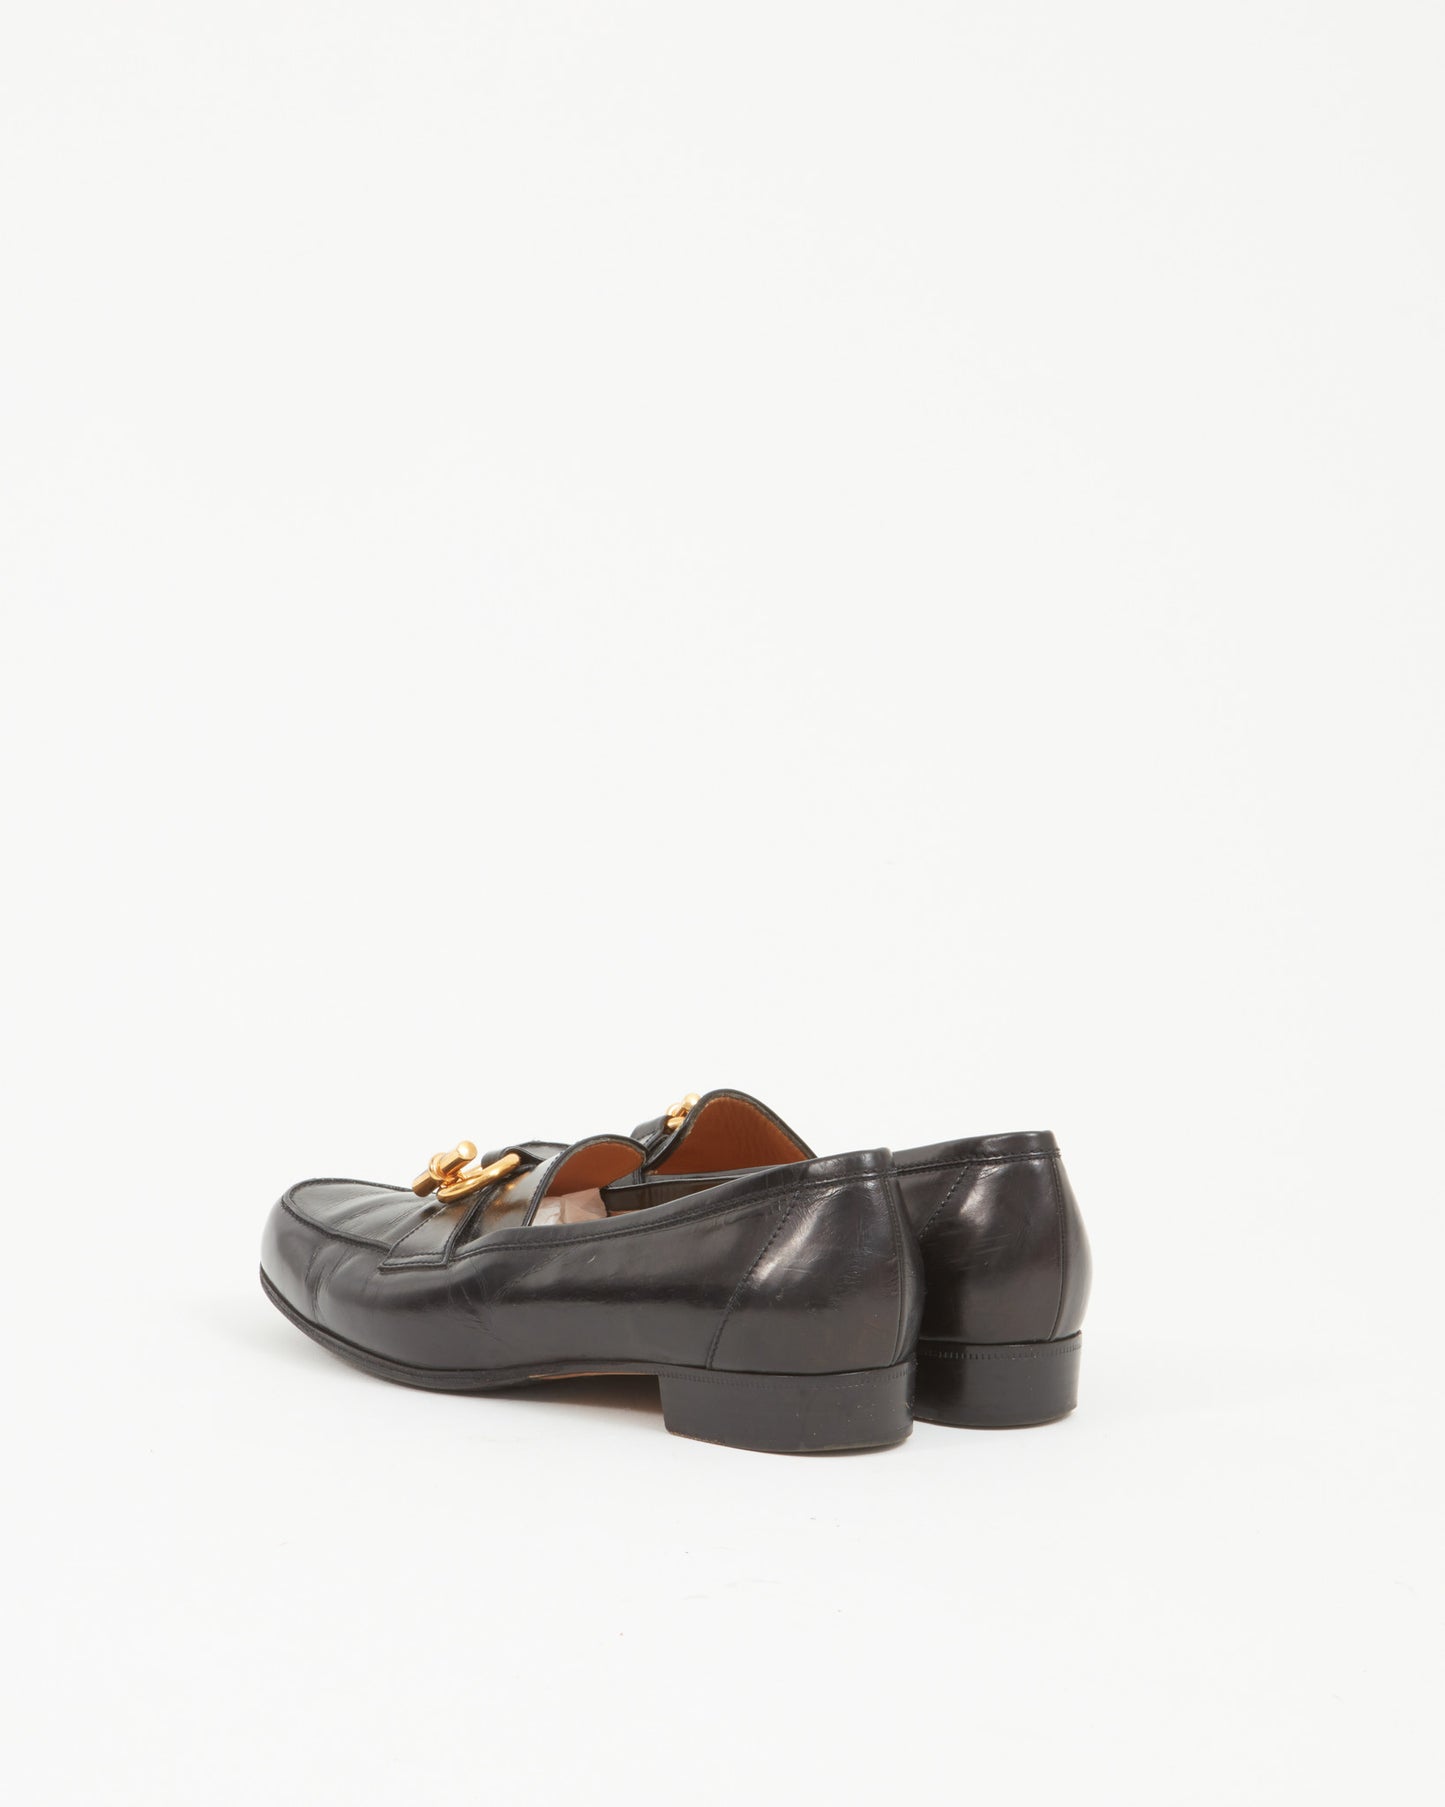 Hermès Black Leather Loafer - 39